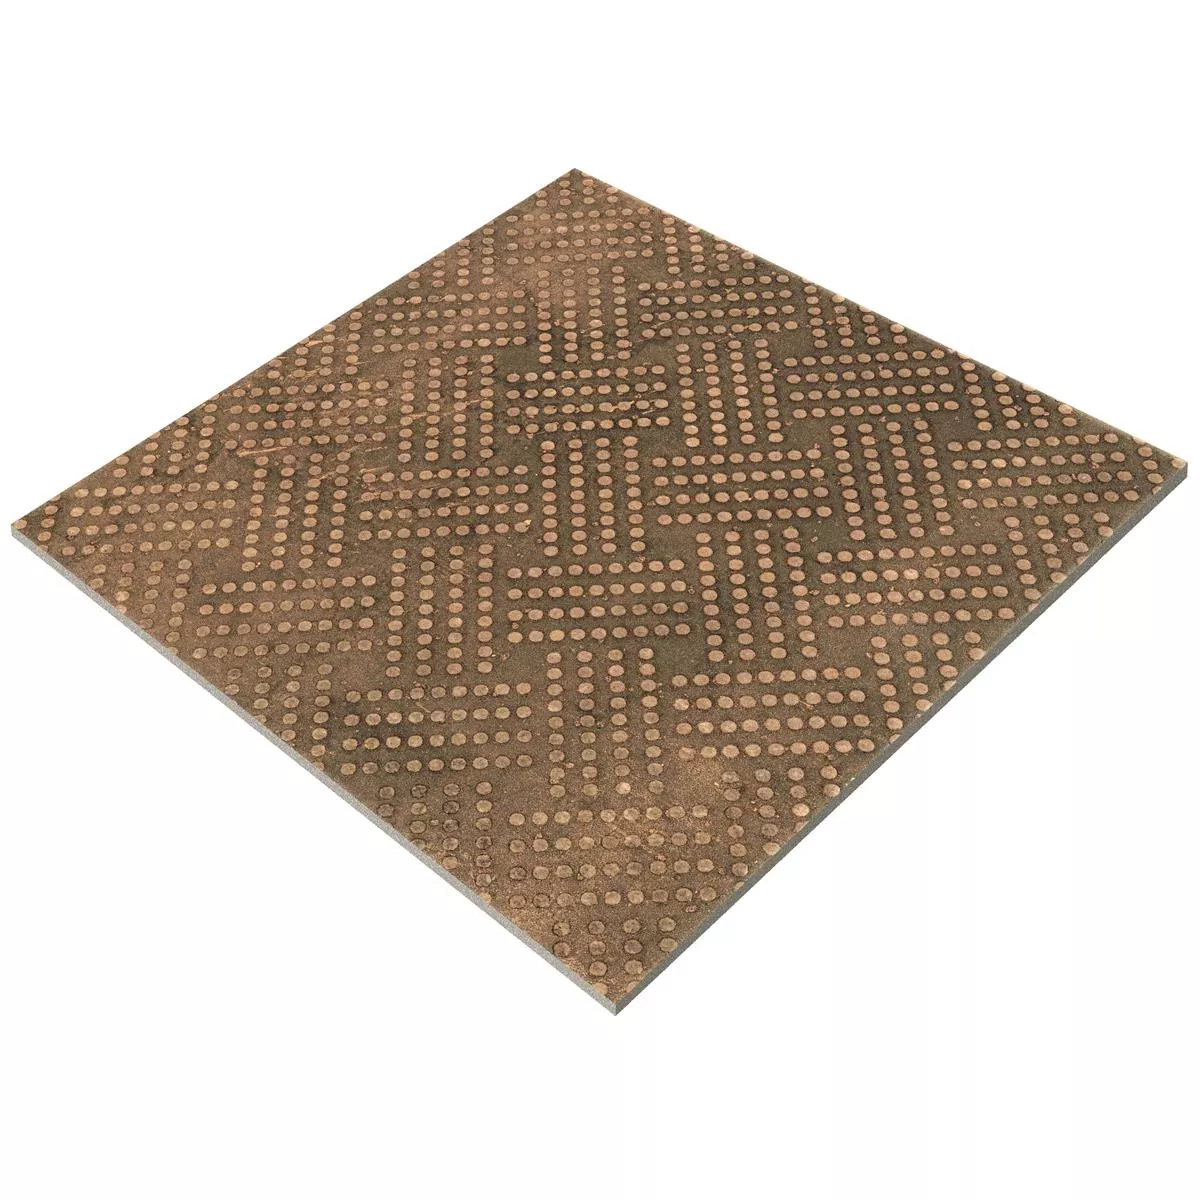 Πλακάκια Δαπέδου Chicago Μεταλλική Εμφάνιση Μπρούντζος R9 - 18,5x18,5cm - 1